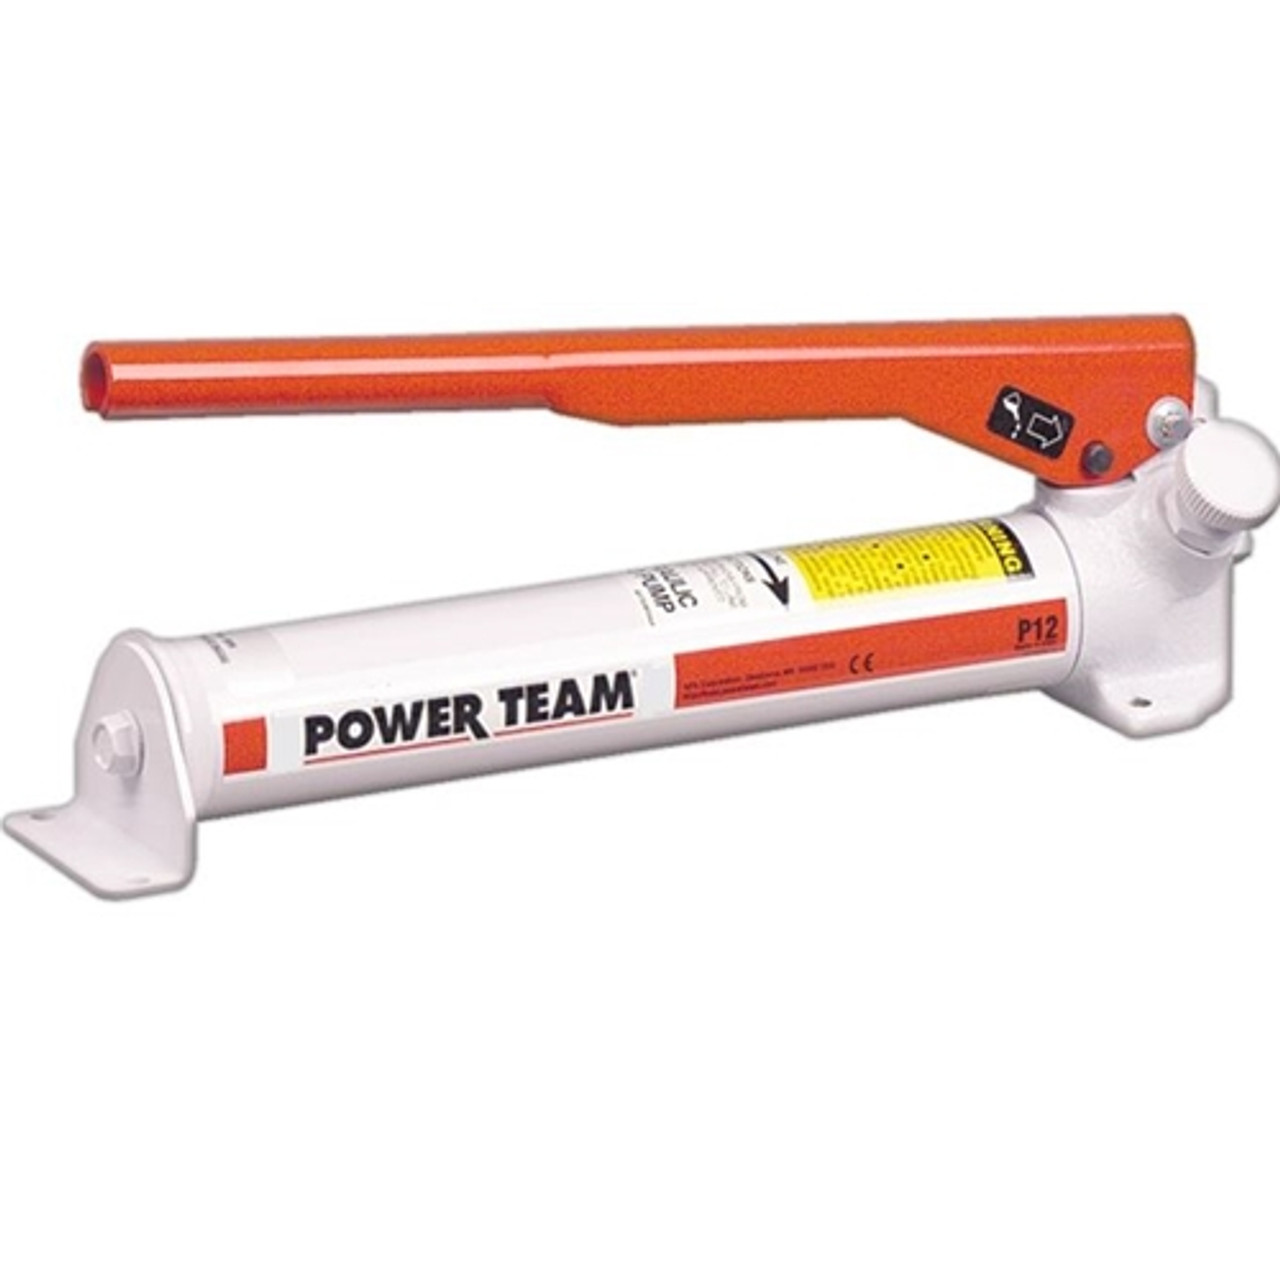 P12 Power Team Hydraulic Hand Pump 1 Speed 